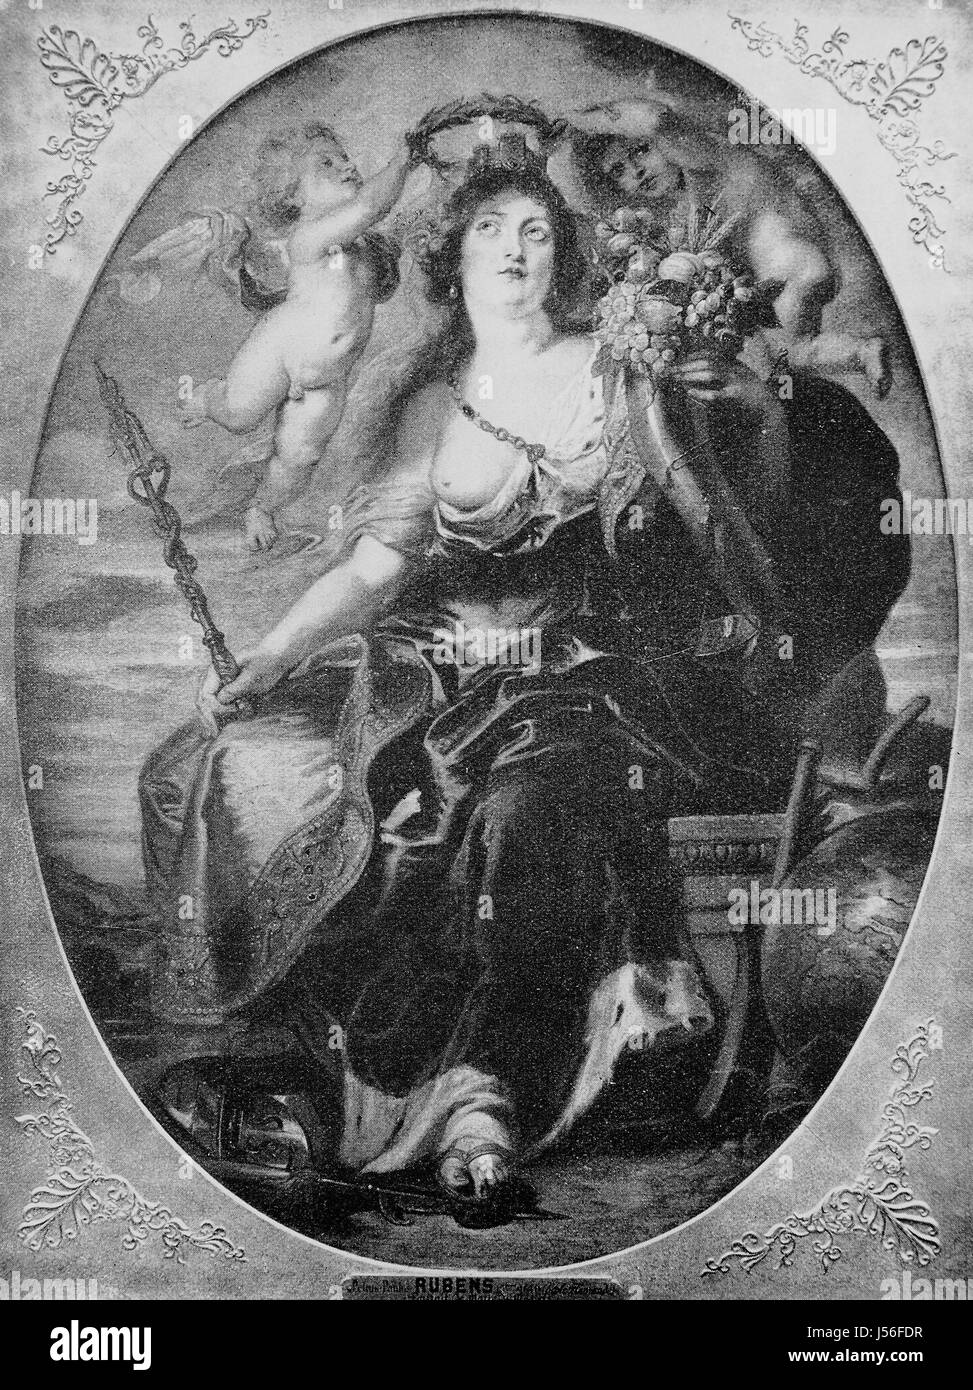 Porträt der Maria von Medici nach einem Gemälde von Rubens, 17. Jahrhundert. Maria de Medici, verbesserte 1575-1642, digitale Reproduktion aus einer Publikation des Jahres 1880 Stockfoto